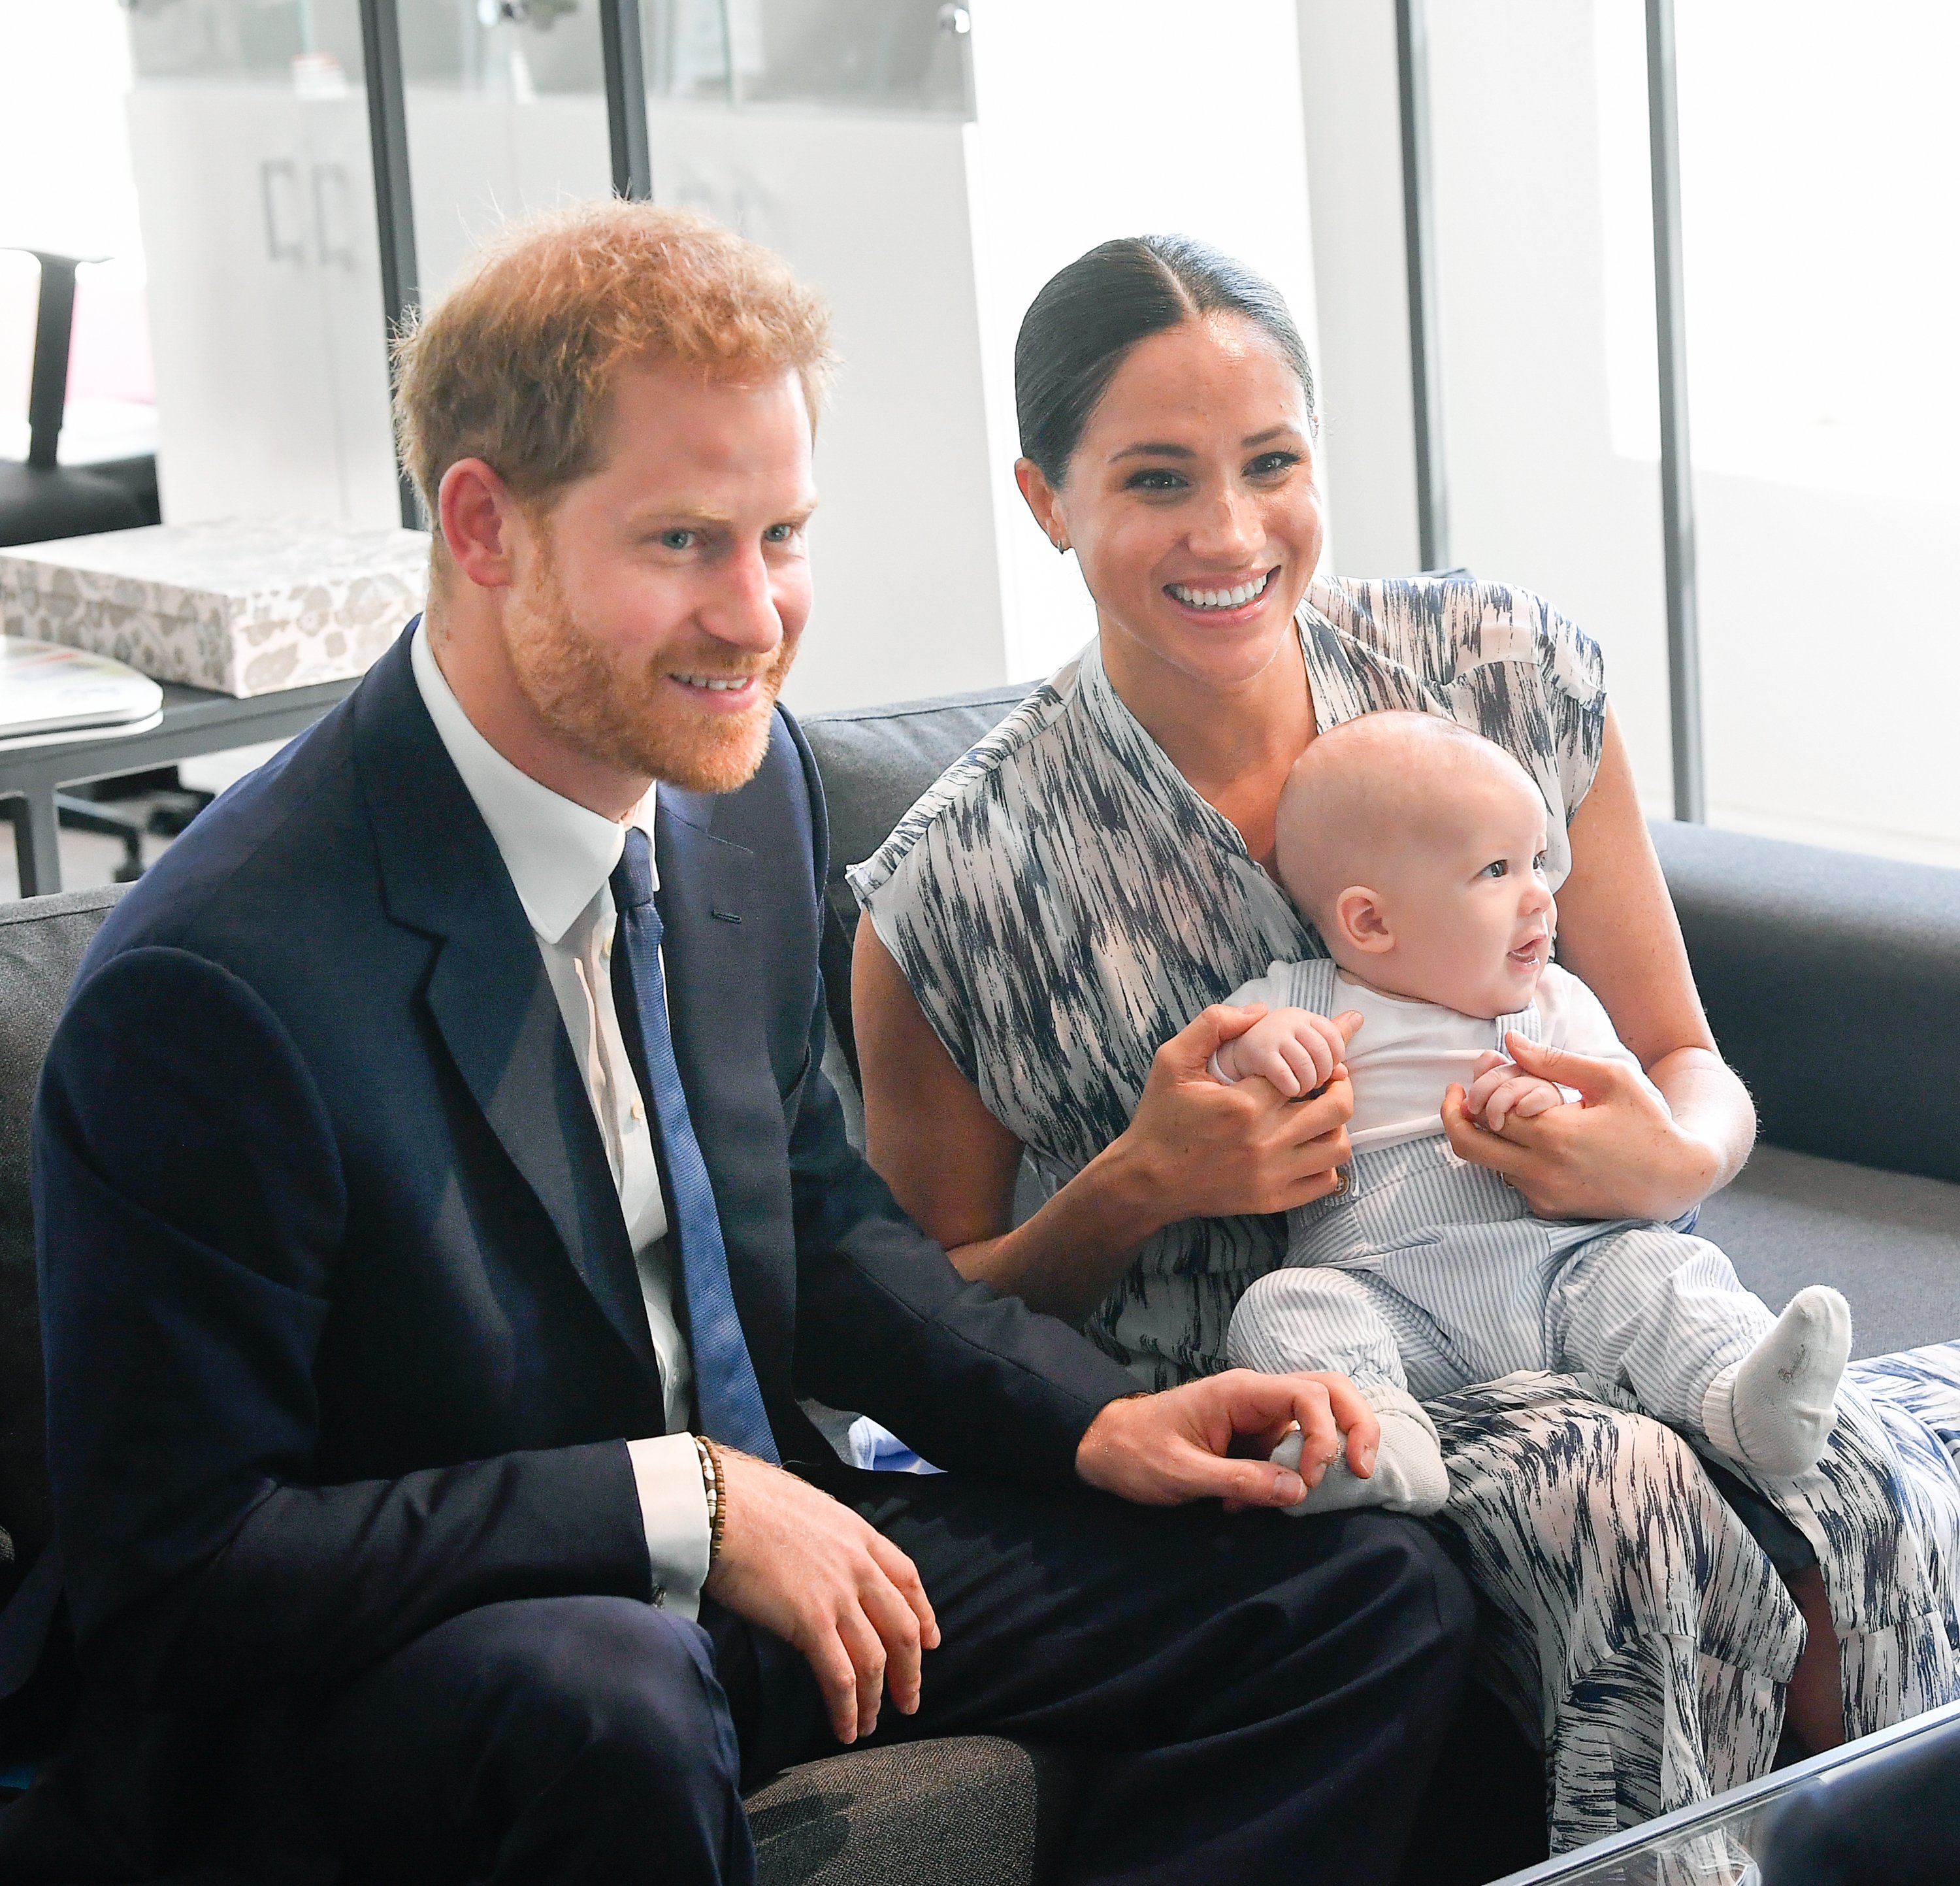 El príncipe Harry fotografiado con su esposa Meghan Markle y su hijo pequeño Archie Mountbatten-Windsor durante su gira real por Sudáfrica el 25 de septiembre de 2019 en Ciudad del Cabo, Sudáfrica ┃Foto: Getty Images